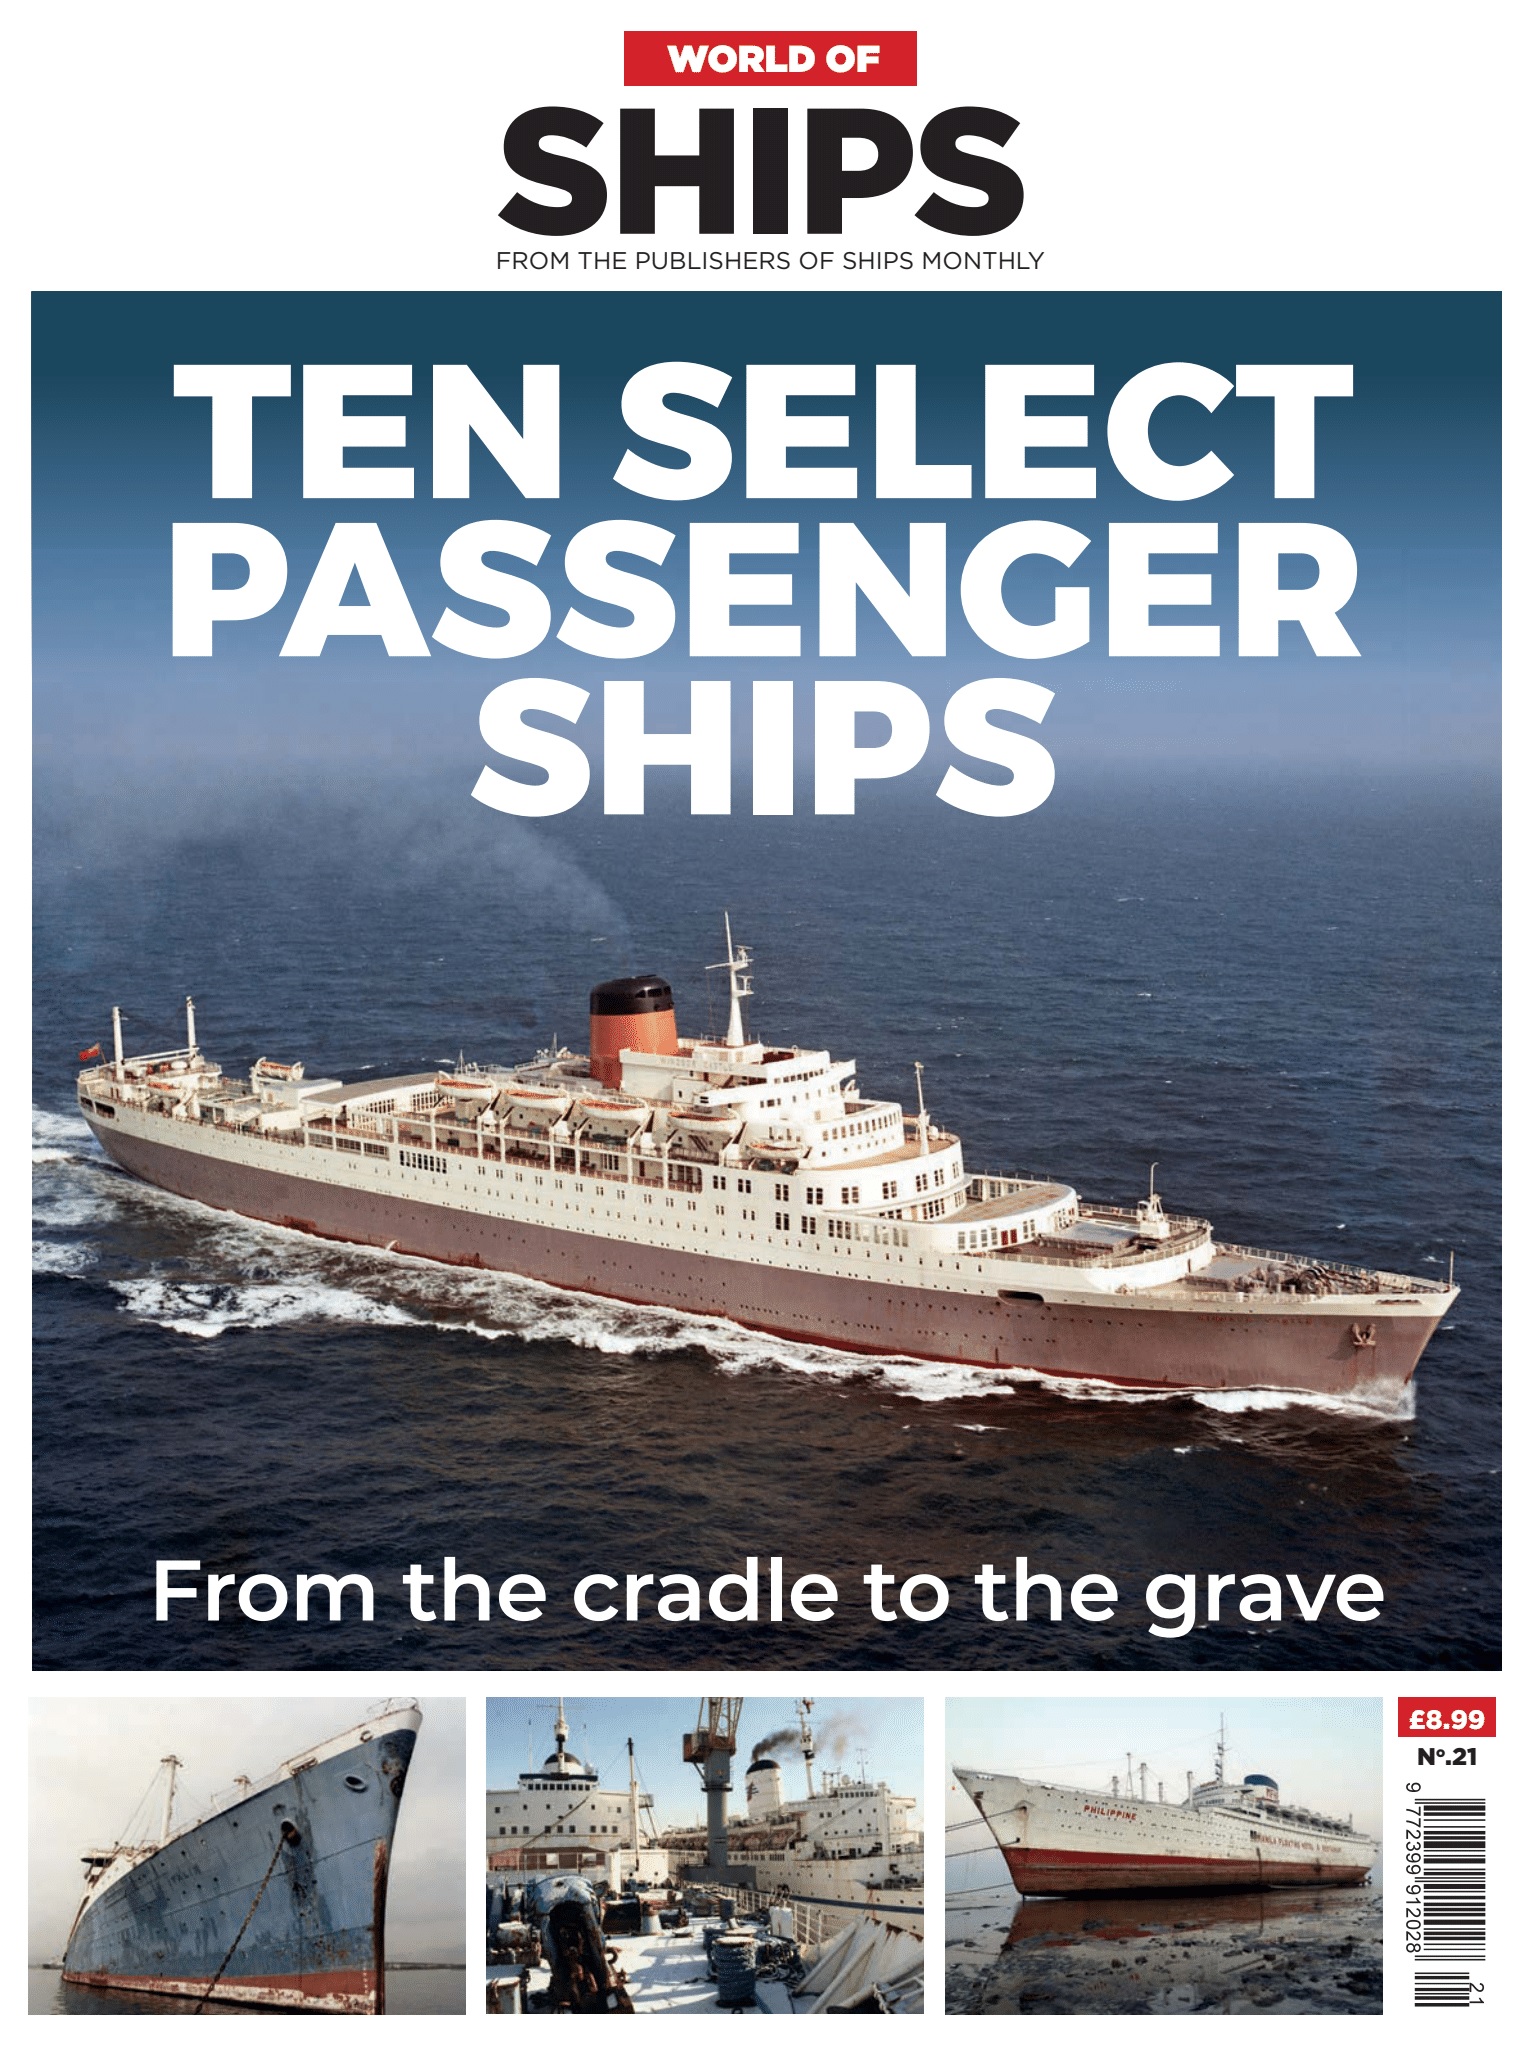 World of Ships #21Ten Select Passenger Ships